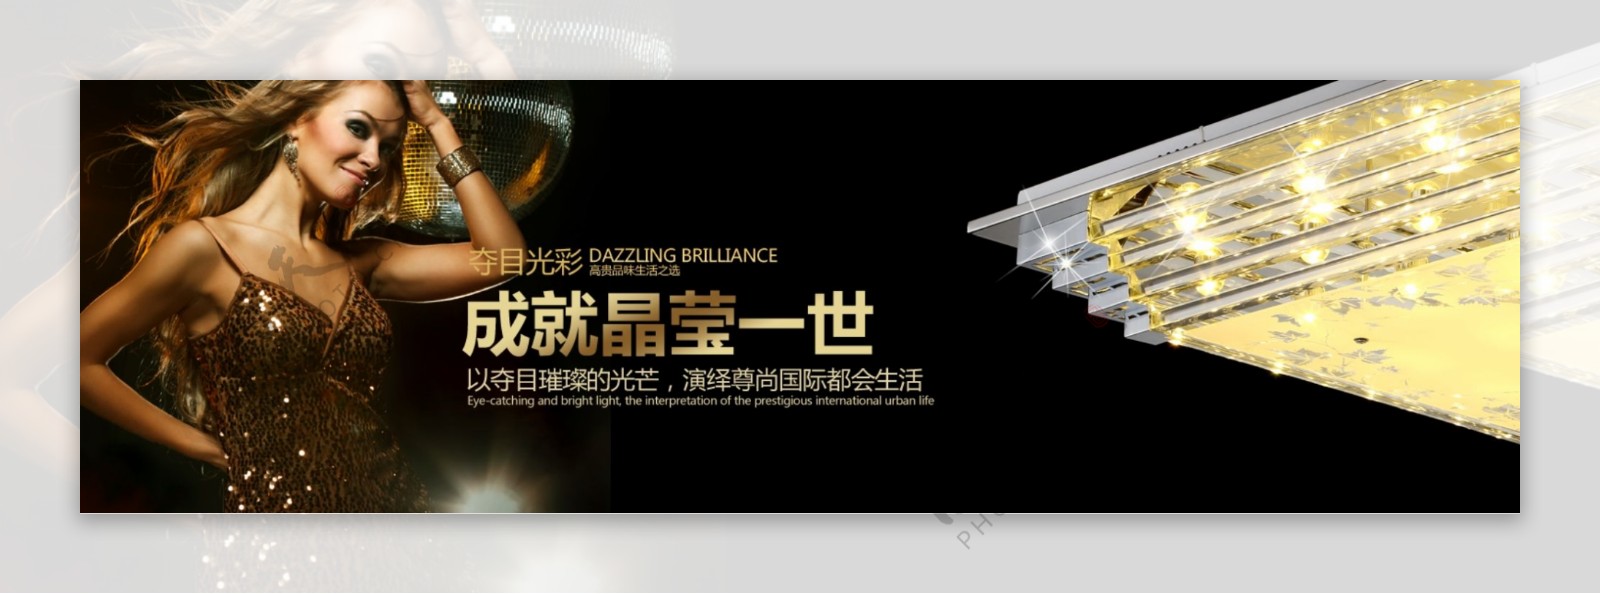 天猫淘宝水晶灯宣传海报模板psd下载